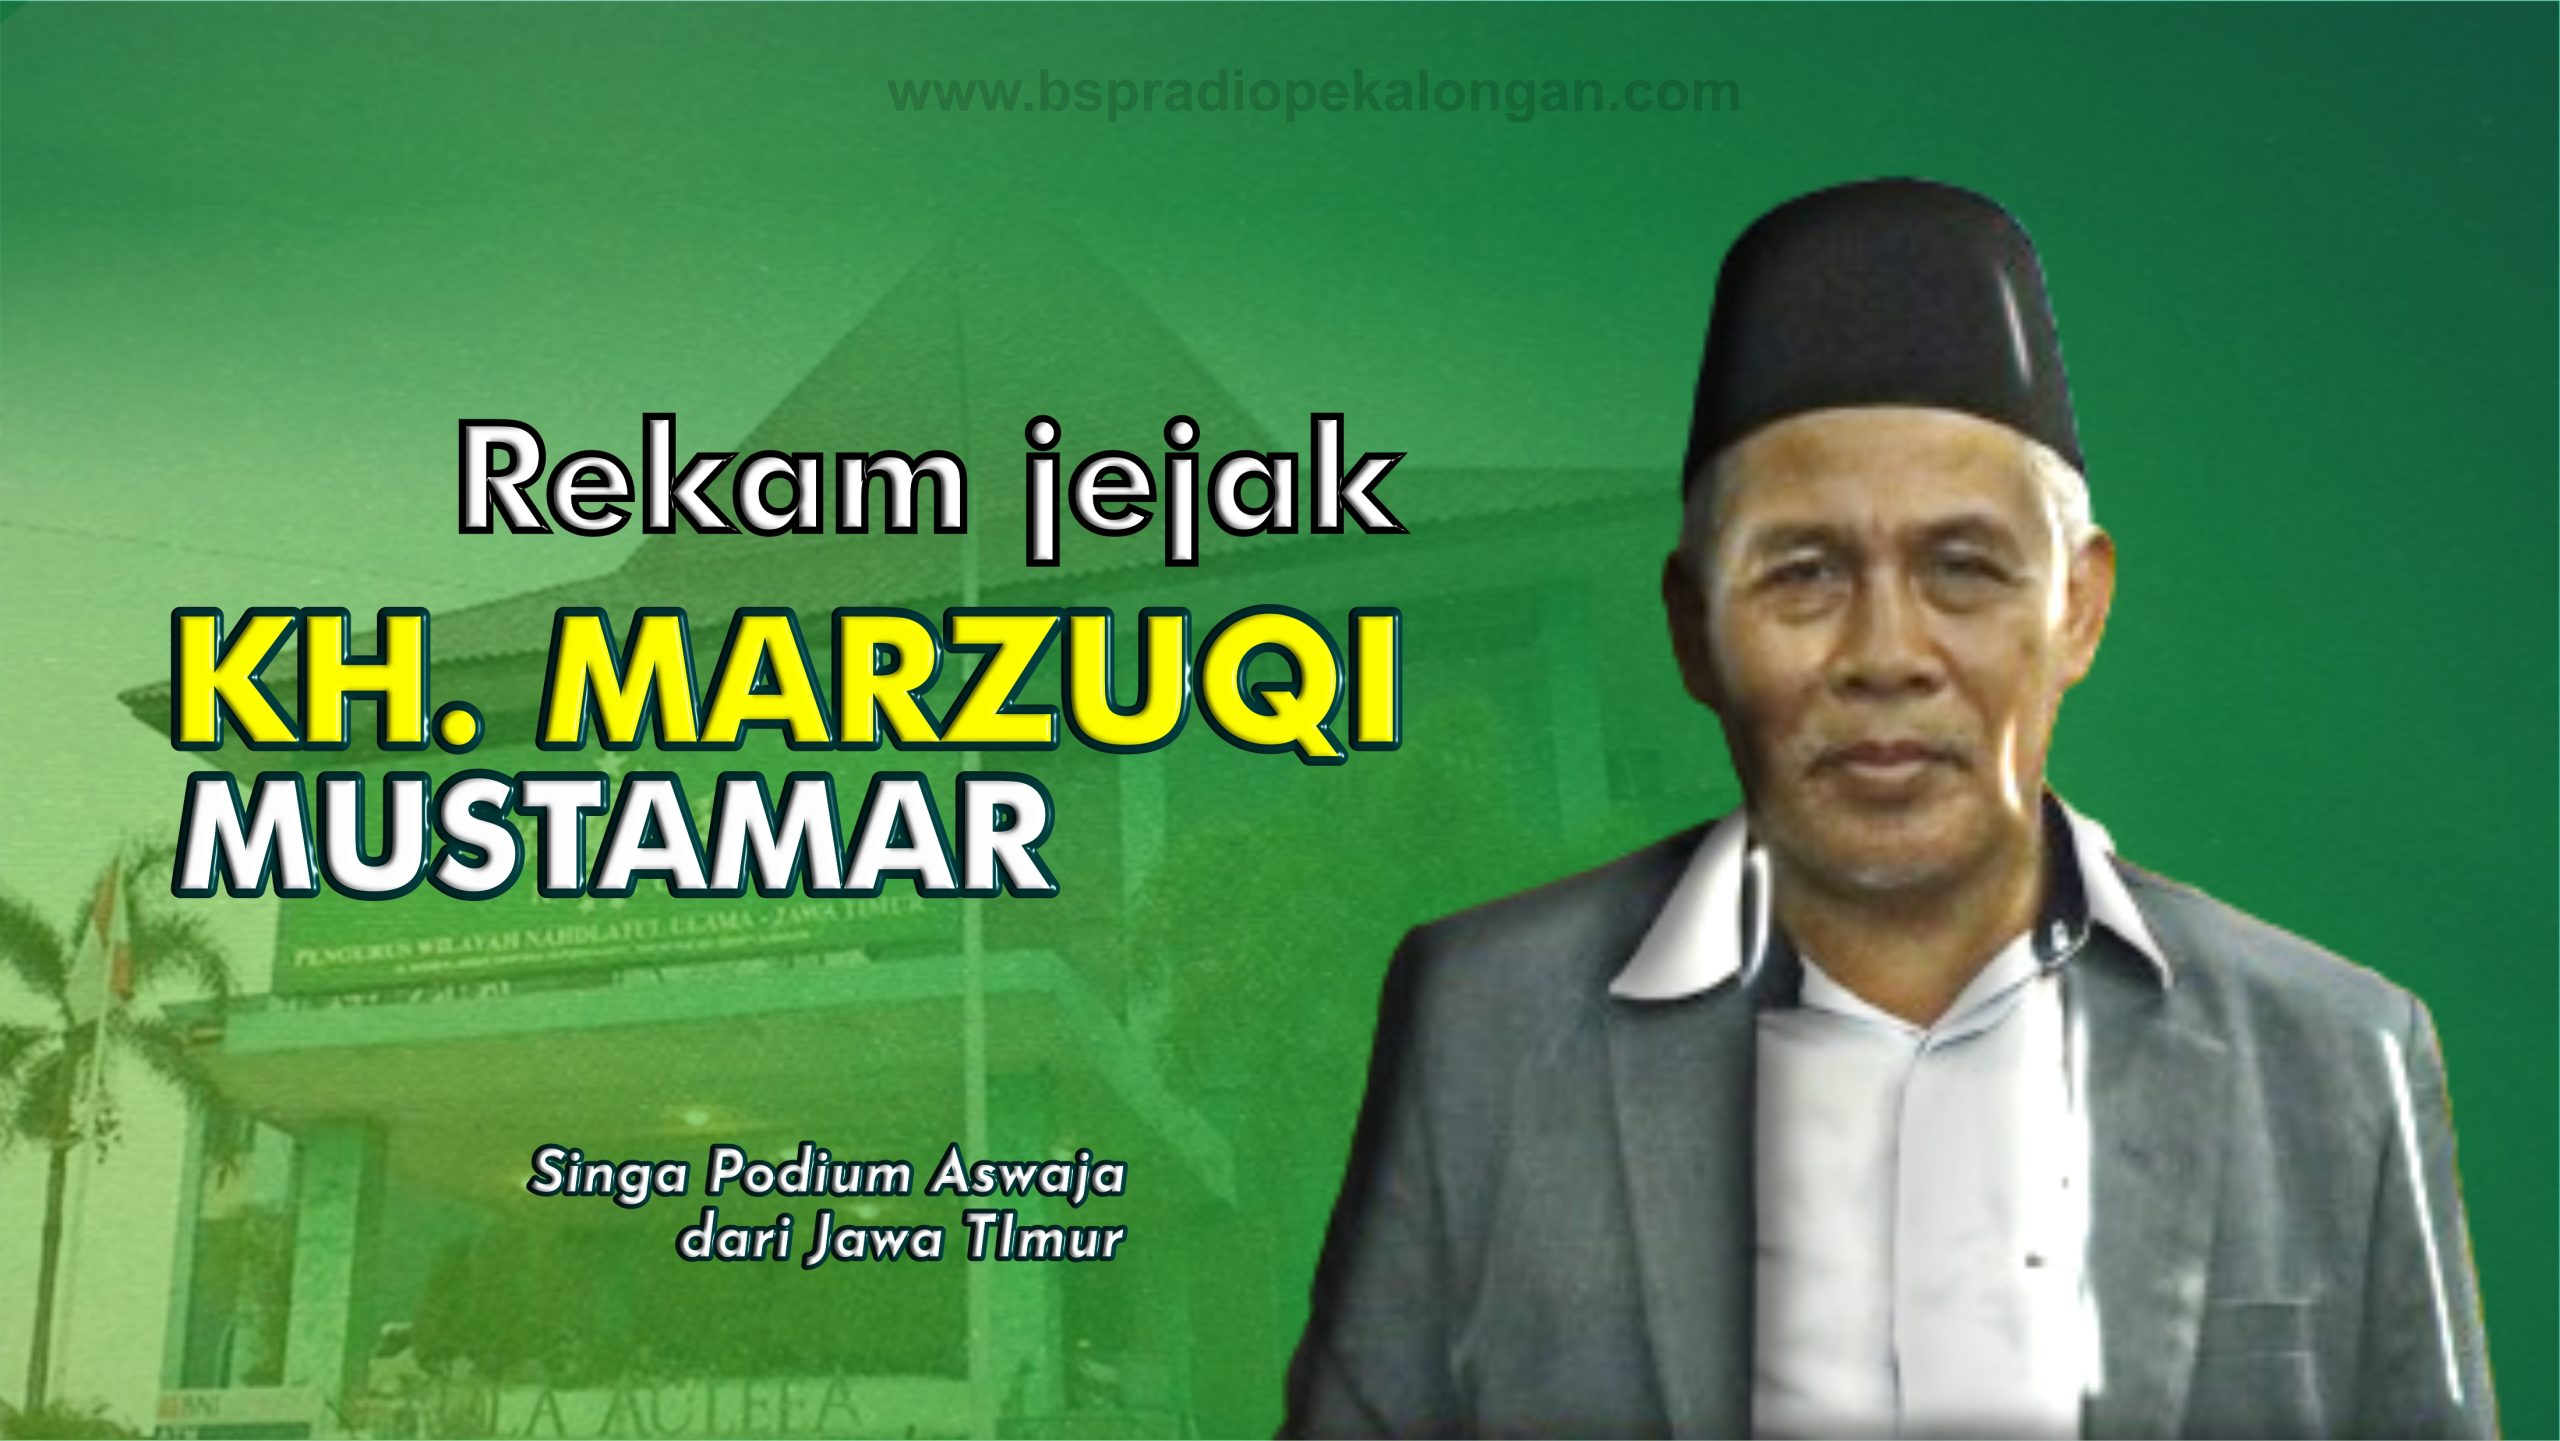 KH. Marzuqi Mustamar : Singa Podium Aswja dari Jawa Timur